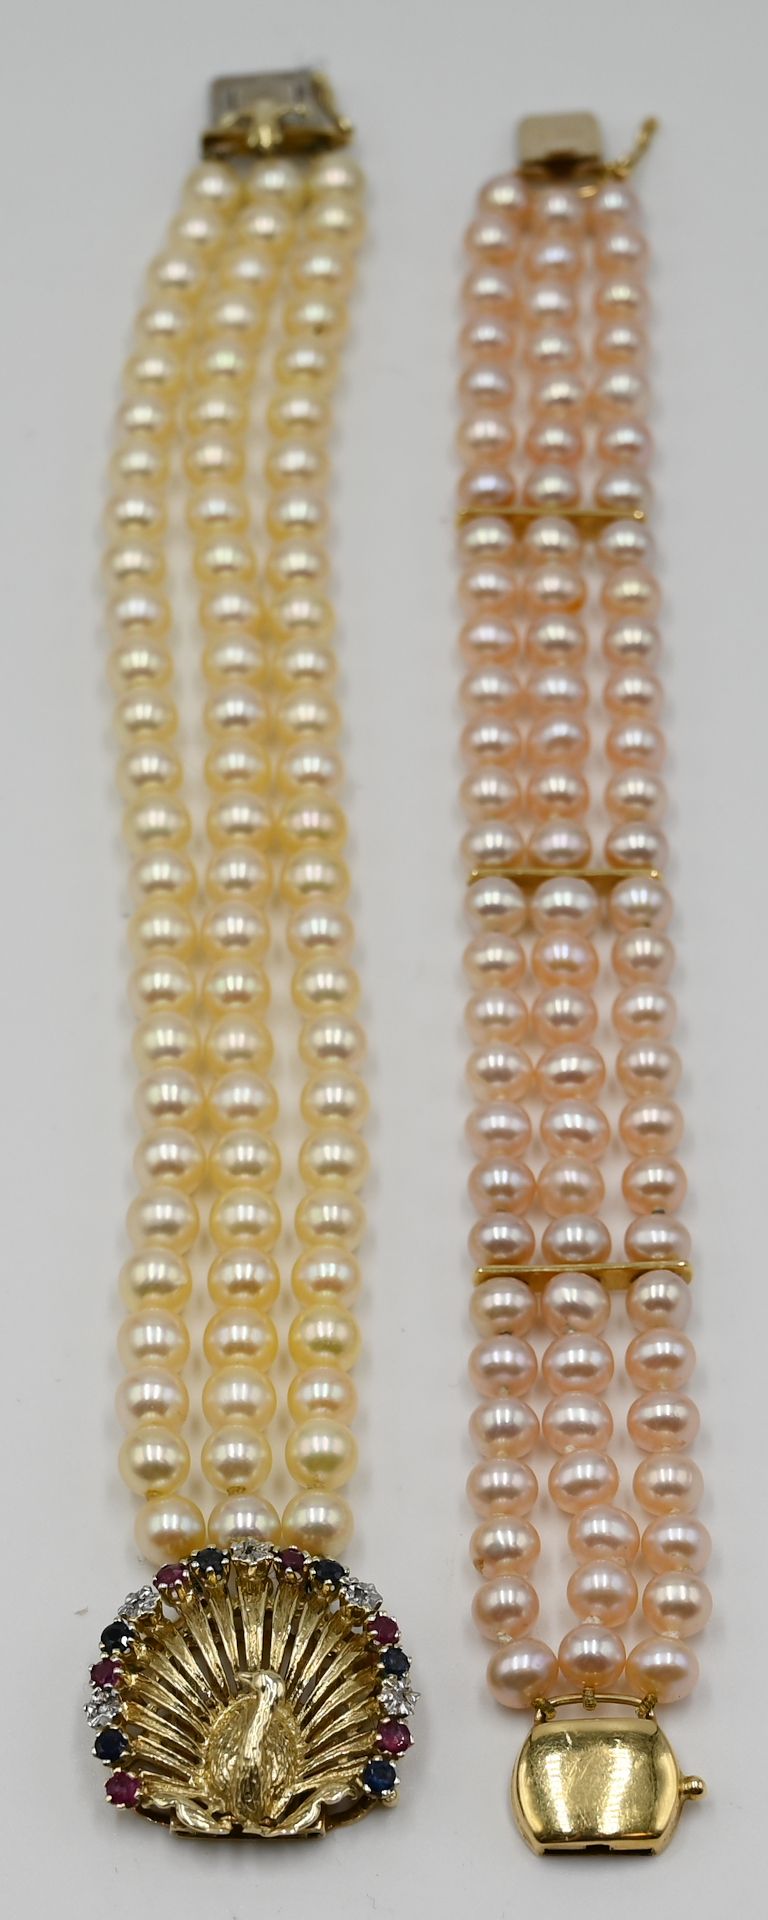 2 Perlarmbänder GG/WG 14/18ct. z.T. mit Edelsteinen (Rubine, Saphire, Diamanten) "Pfau" Gsp.